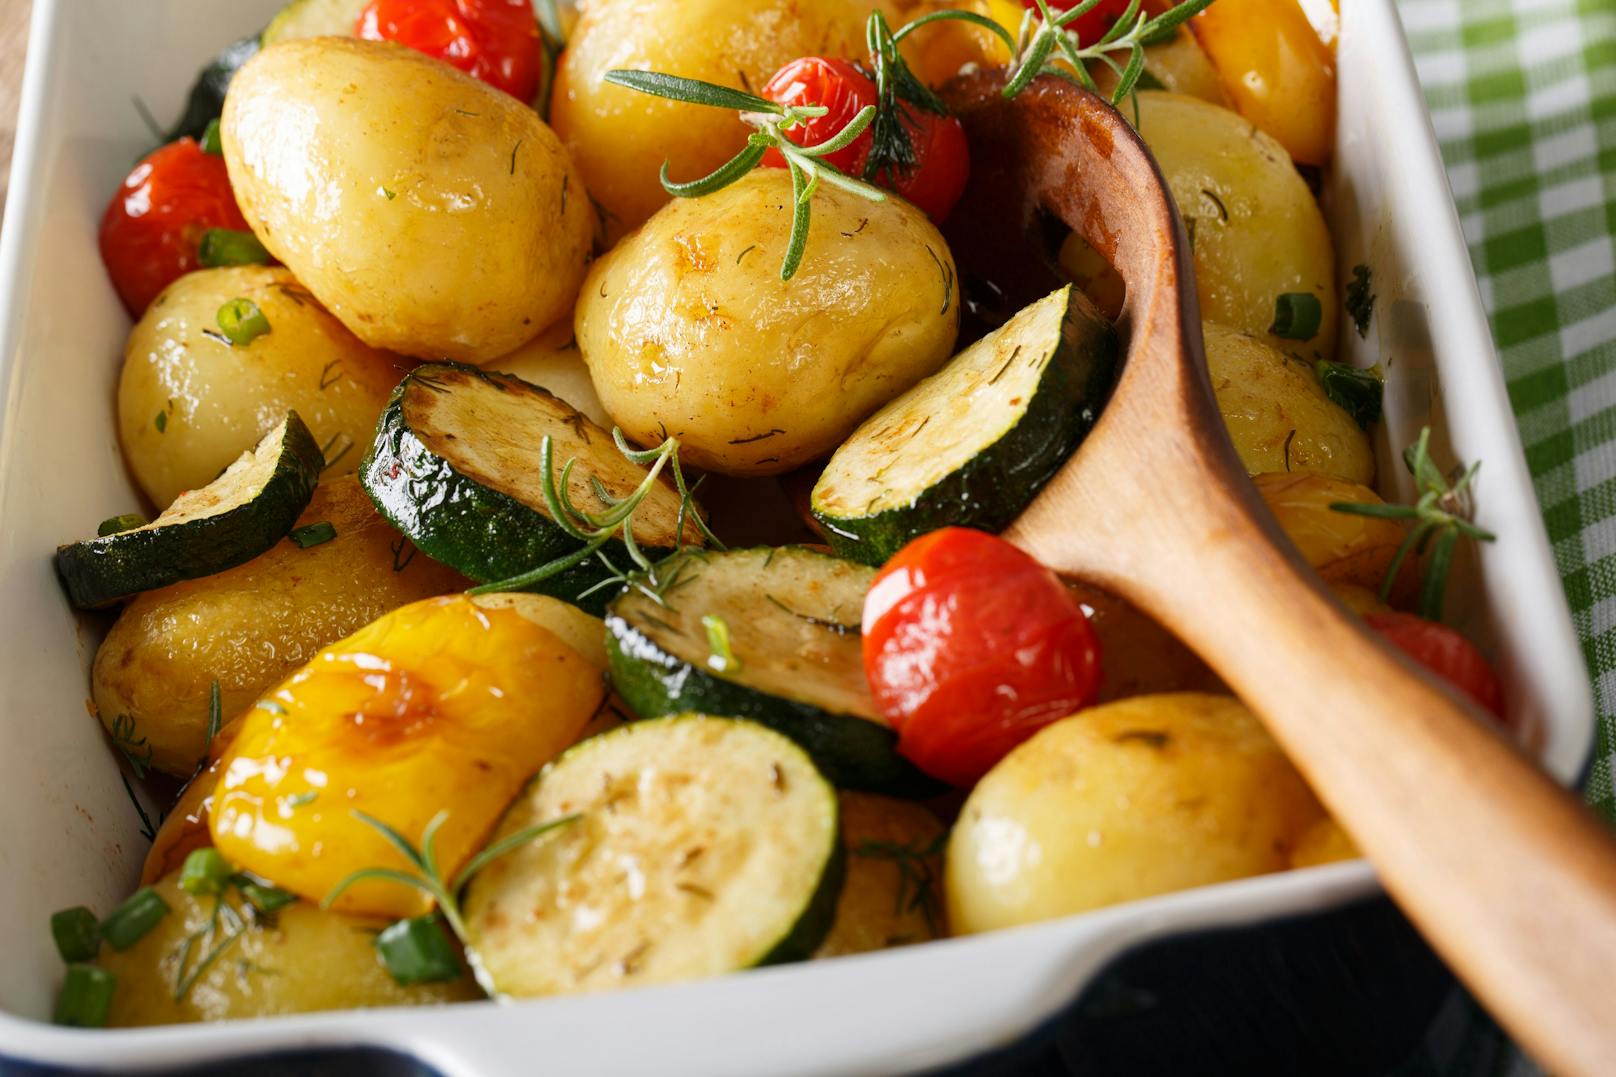 In gewissen Fällen können Kartoffeln und Zucchetti toxisch sein – ein Toxikologe klärt auf, was du beachten musst, um Bauchweh und Schlimmeres zu vermeiden.